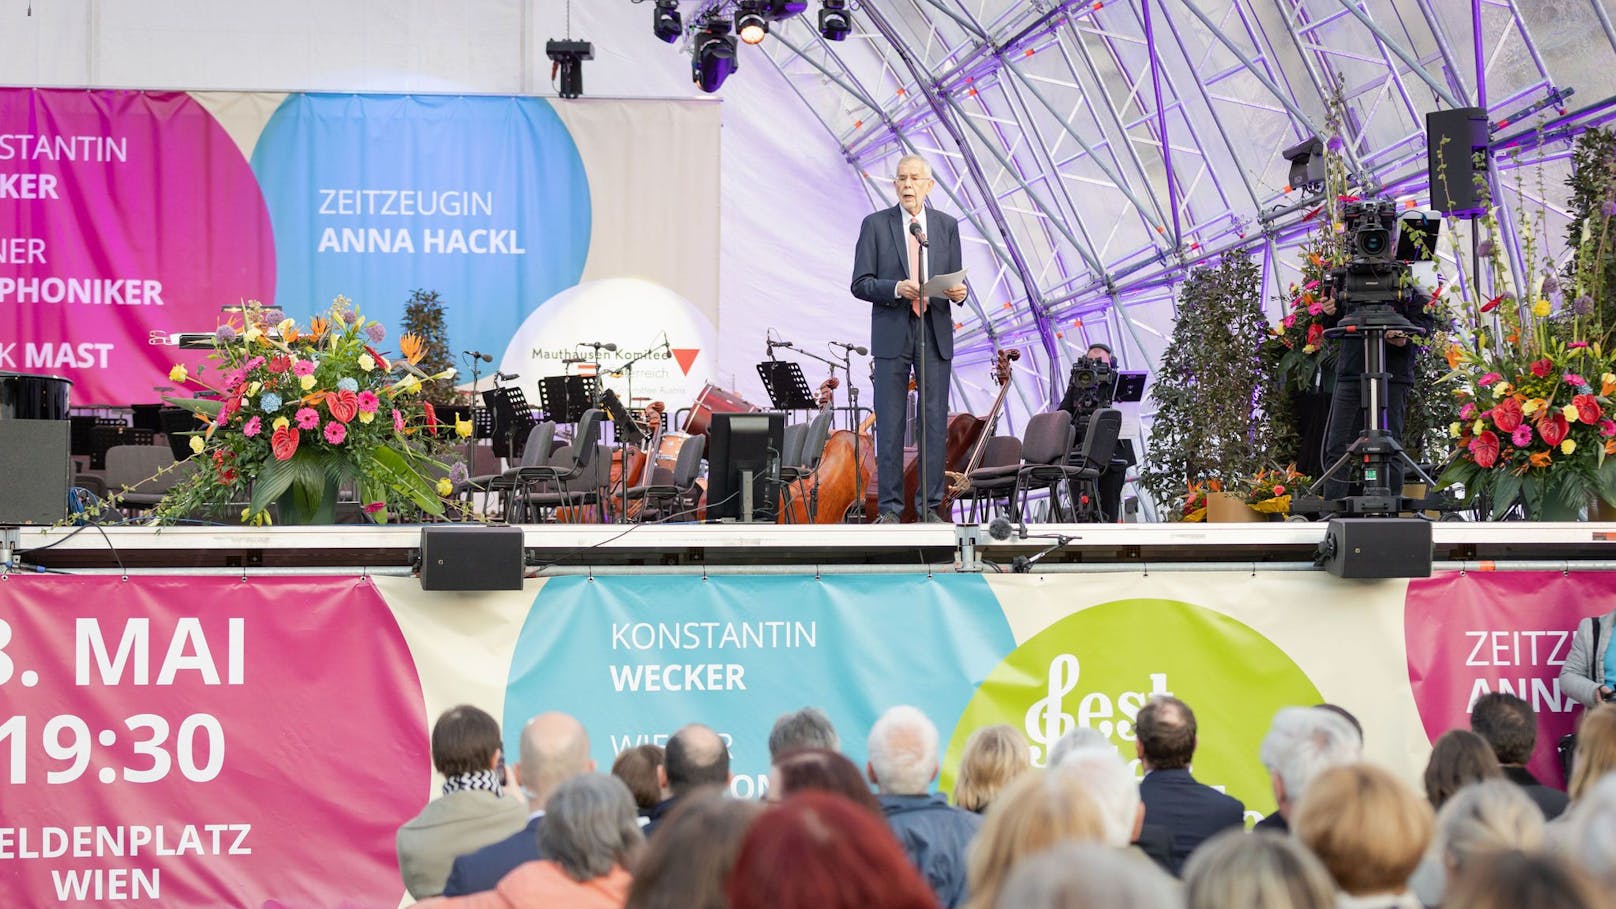 Wiener feiern bei Gratis-Konzert und Songcontest